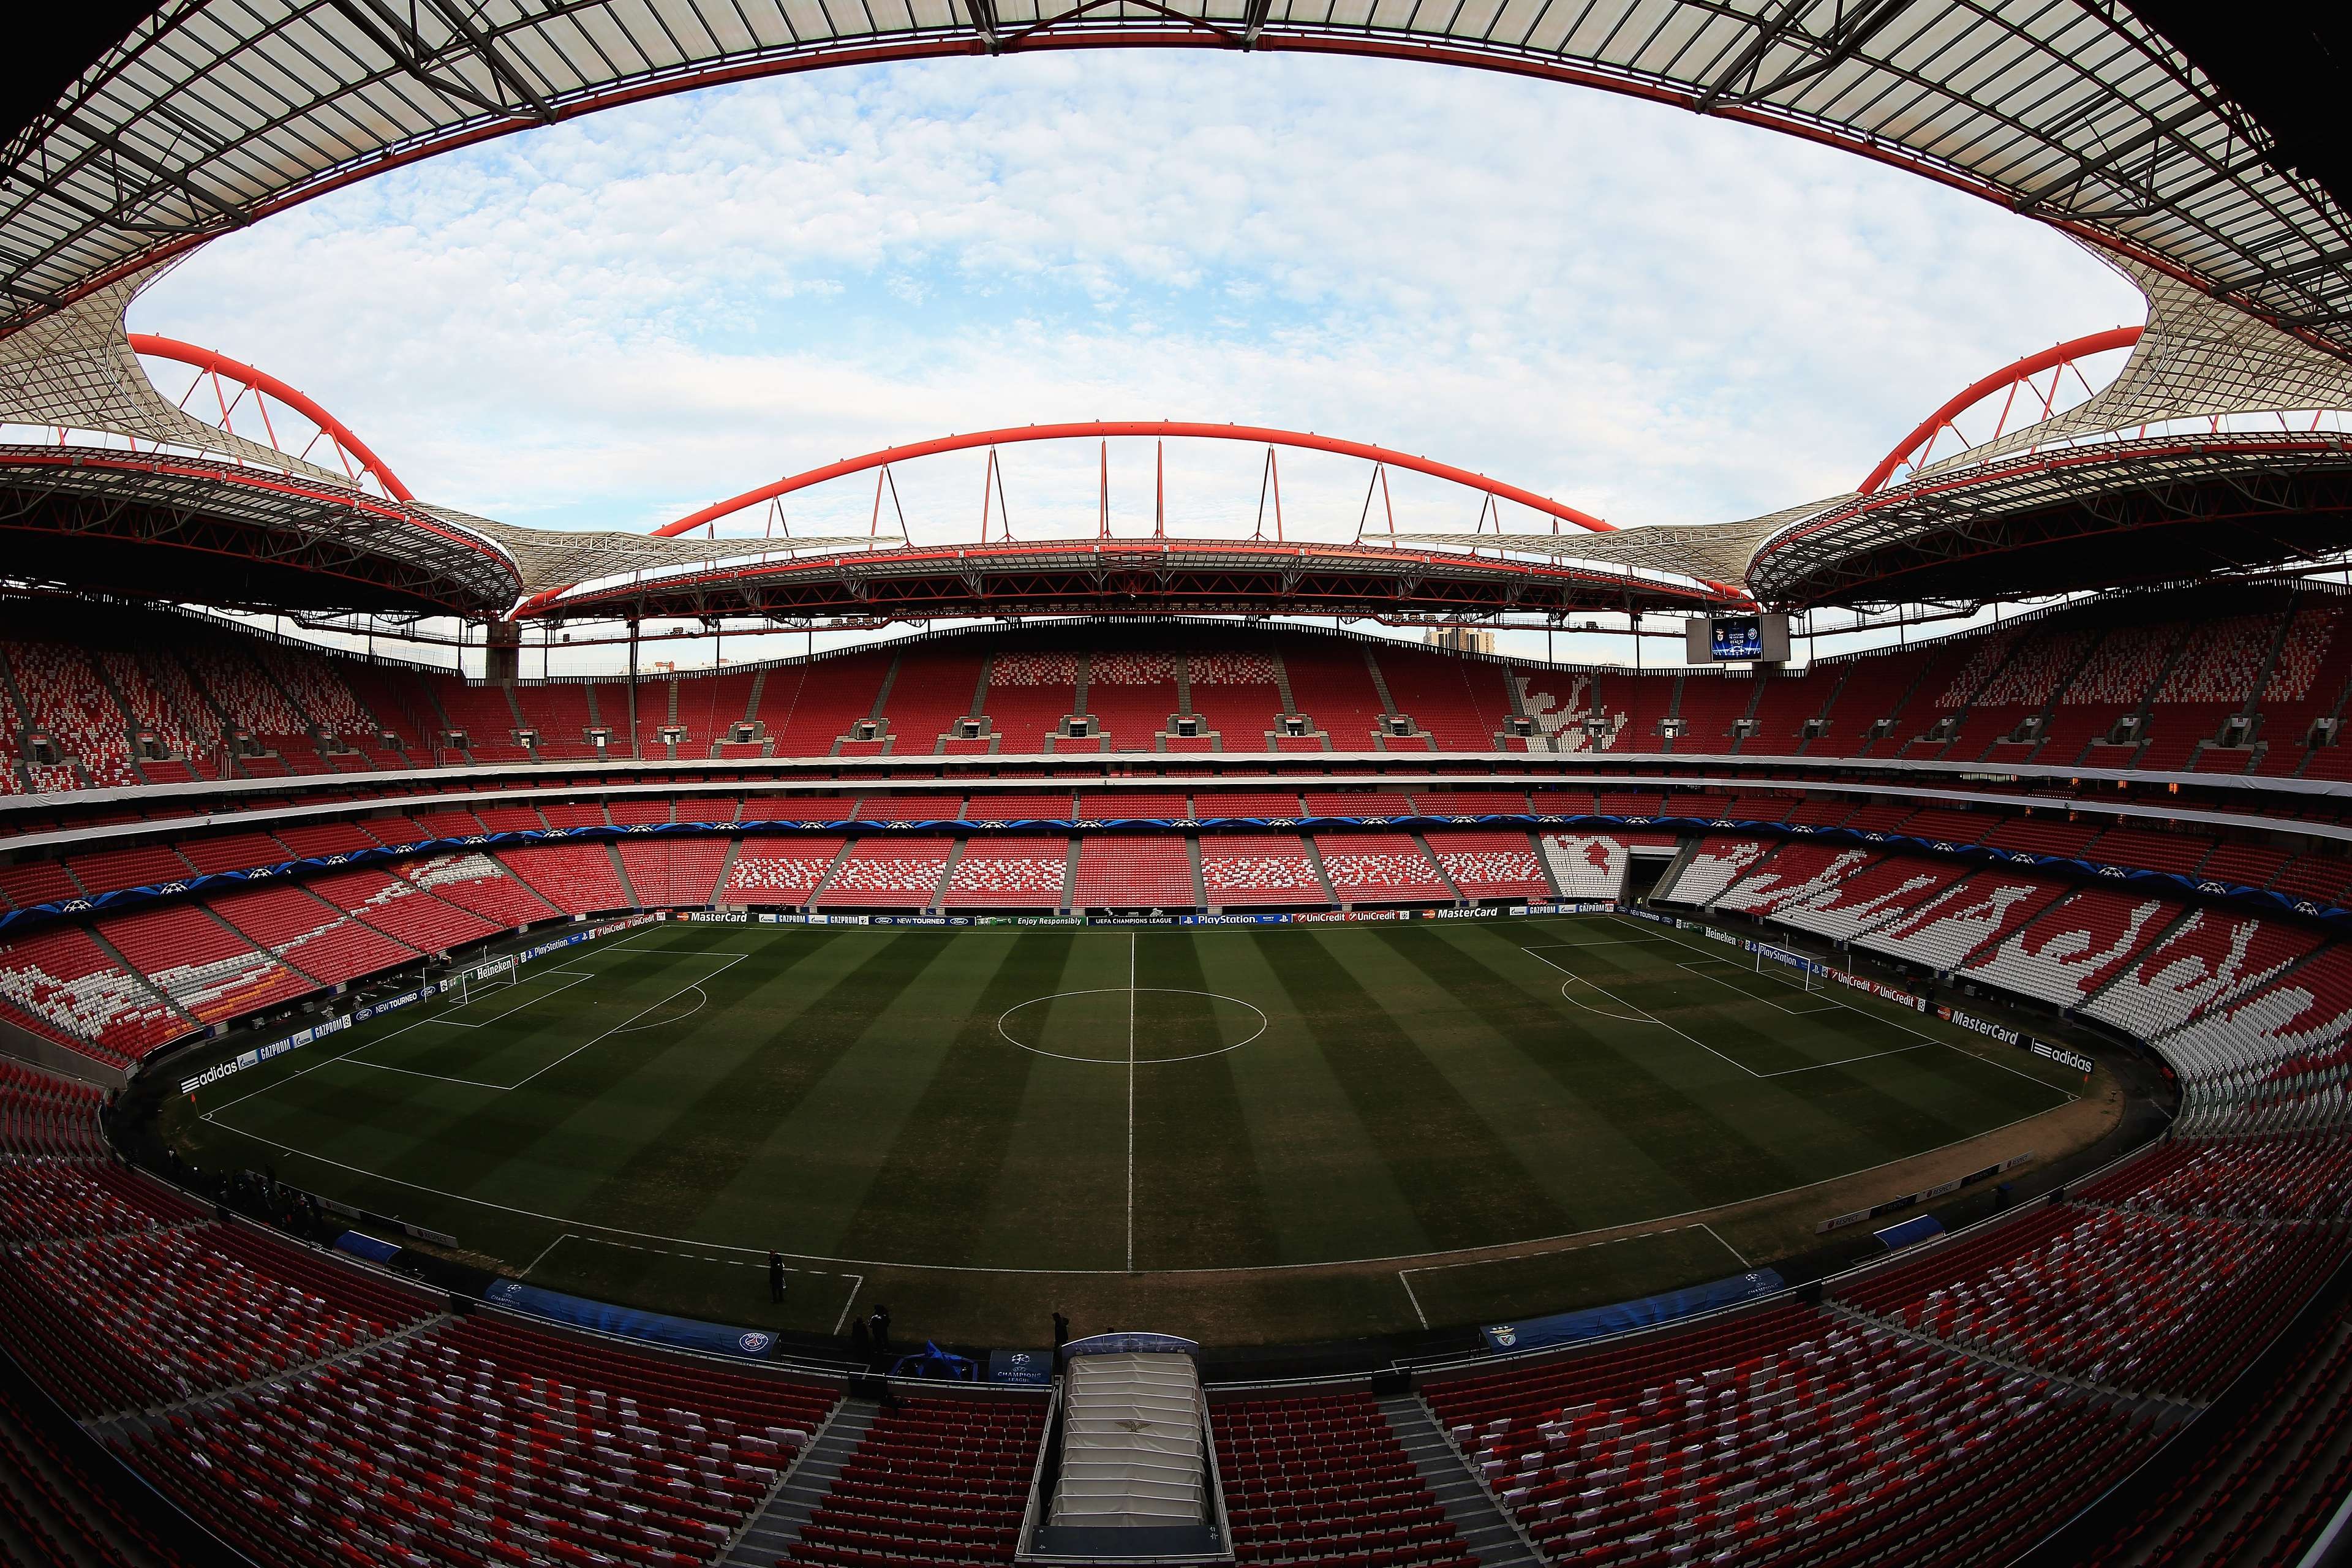 Benfica's Estadio da Luz